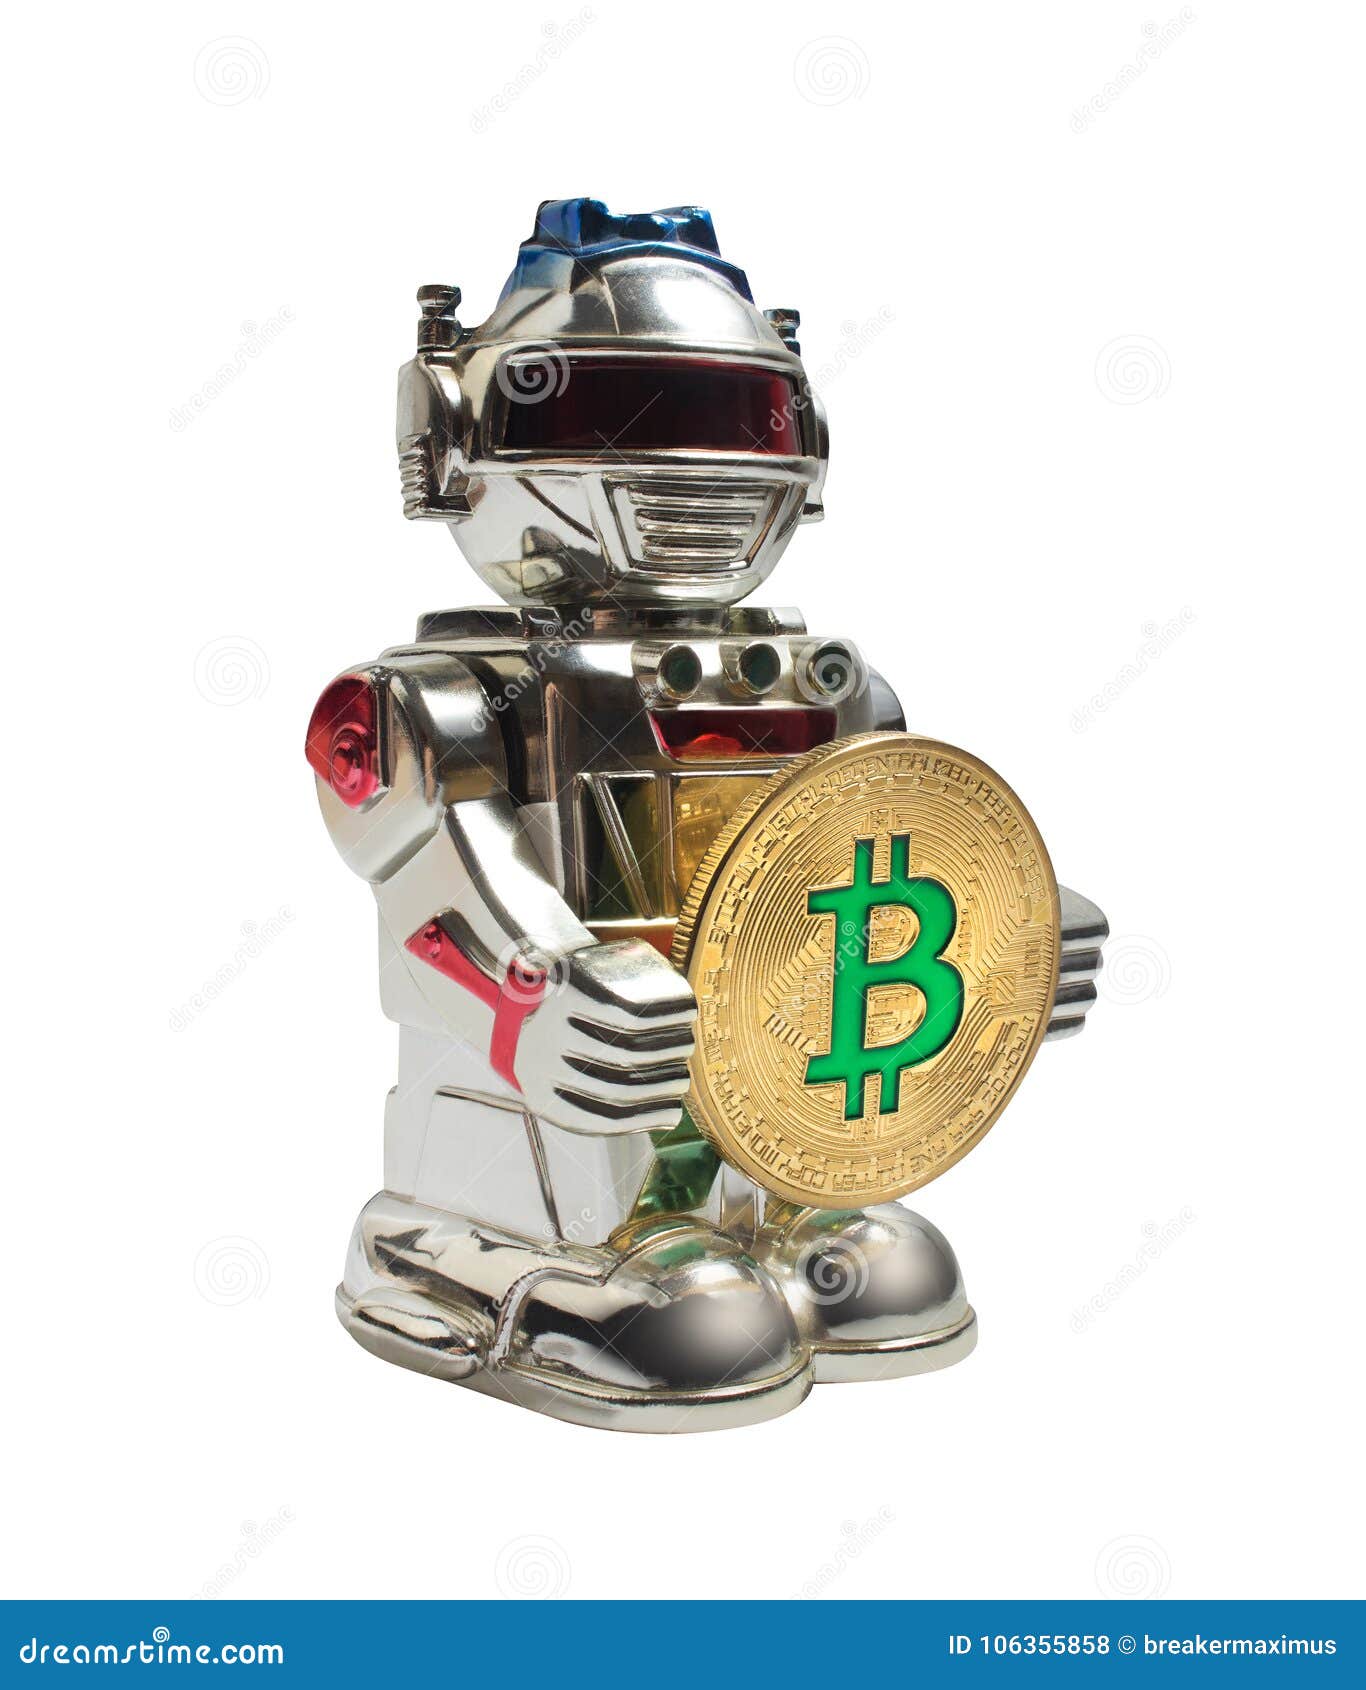 comerț cu robot bitcoin)